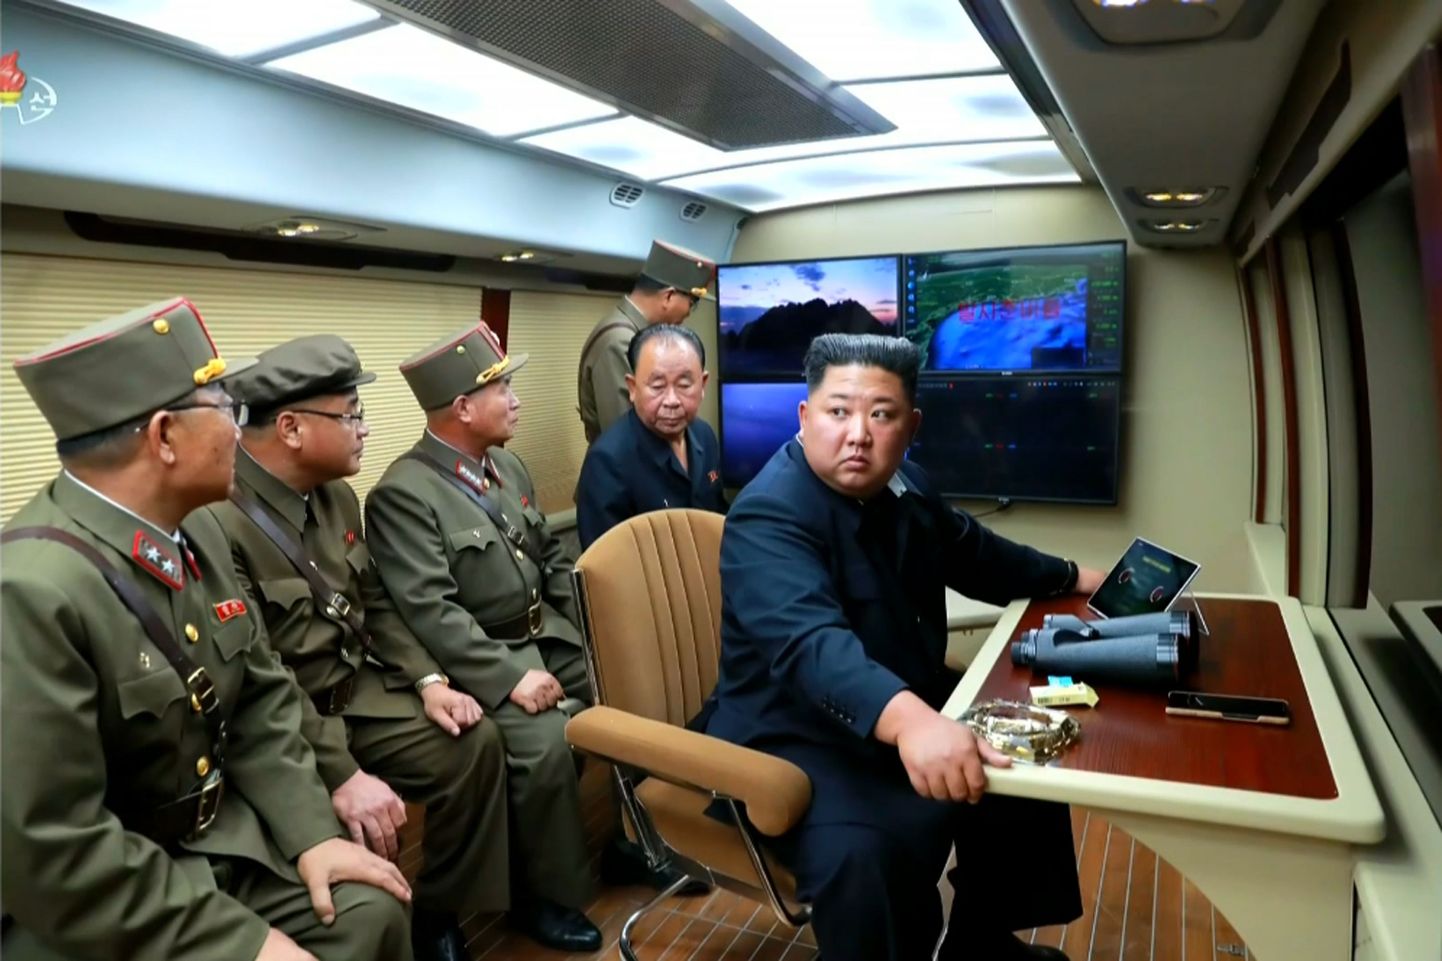 Põhja-Korea liider Kim Jong-un juhatamas lühimaarakettide katsetust kolmapäeval. Foto avaldas päev hiljem Põhja-Korea riiklik uudisteagentuur KCNA.